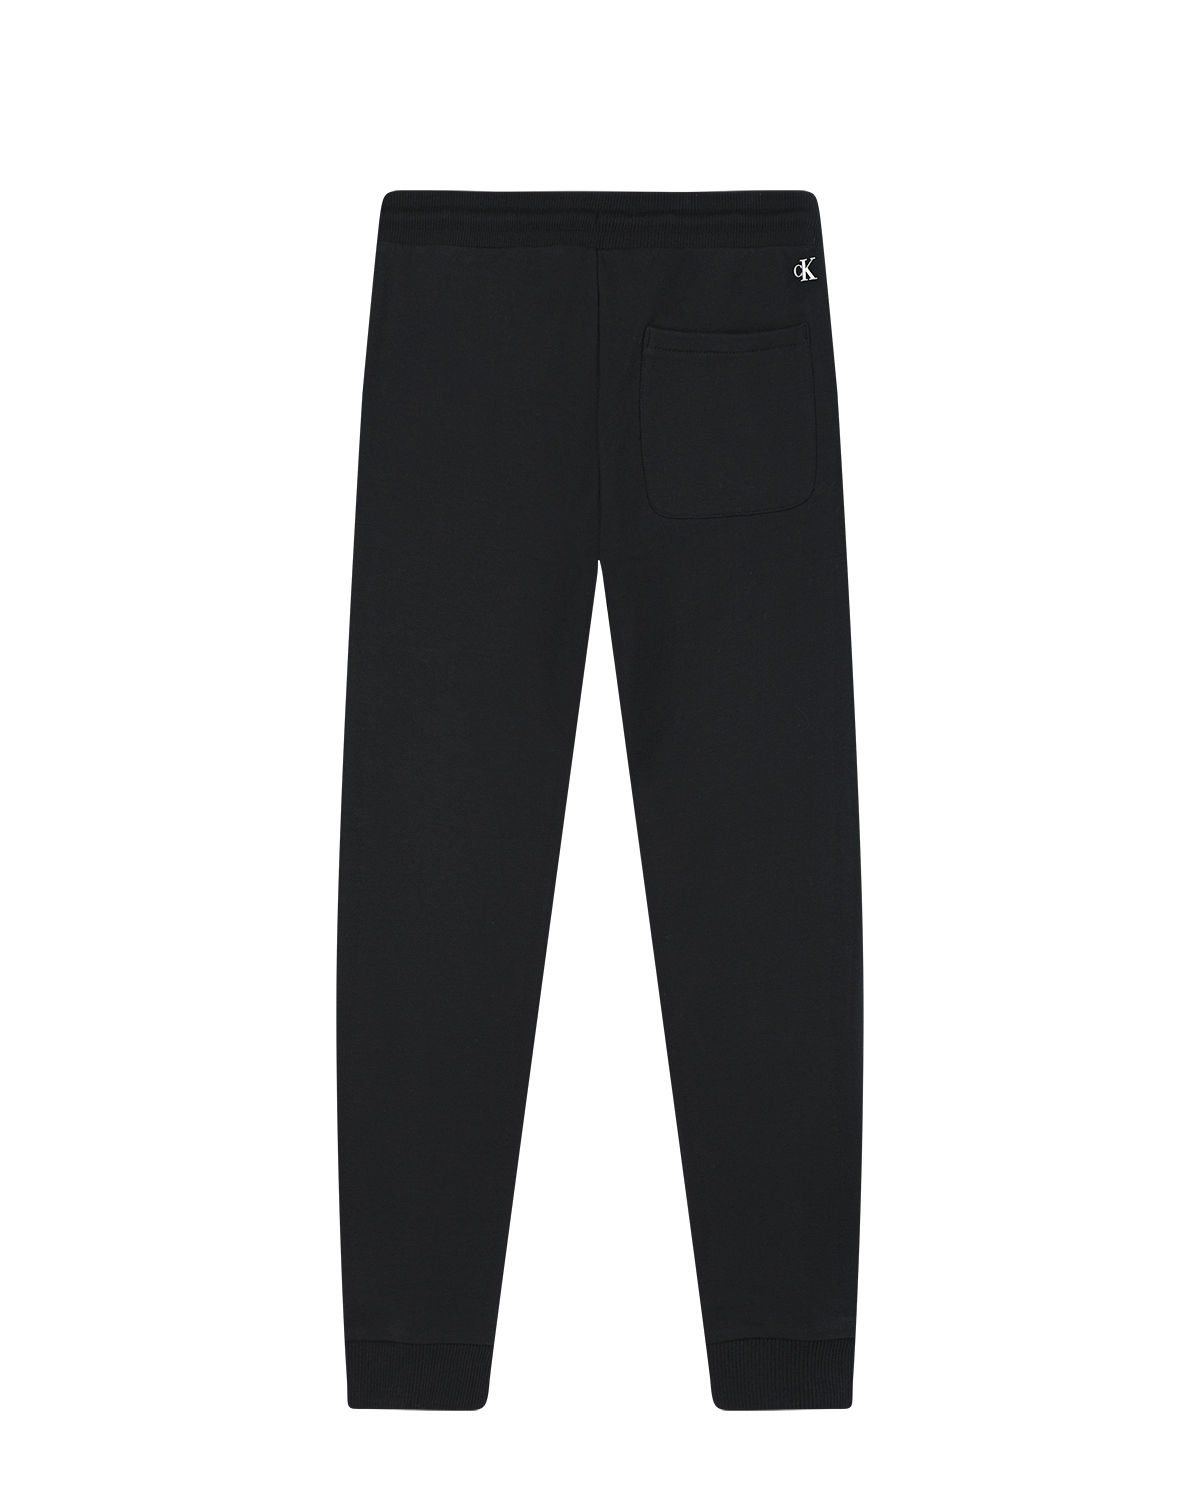 Черные спортивные брюки с белым логотипом Calvin Klein детские, размер 140, цвет нет цвета - фото 2